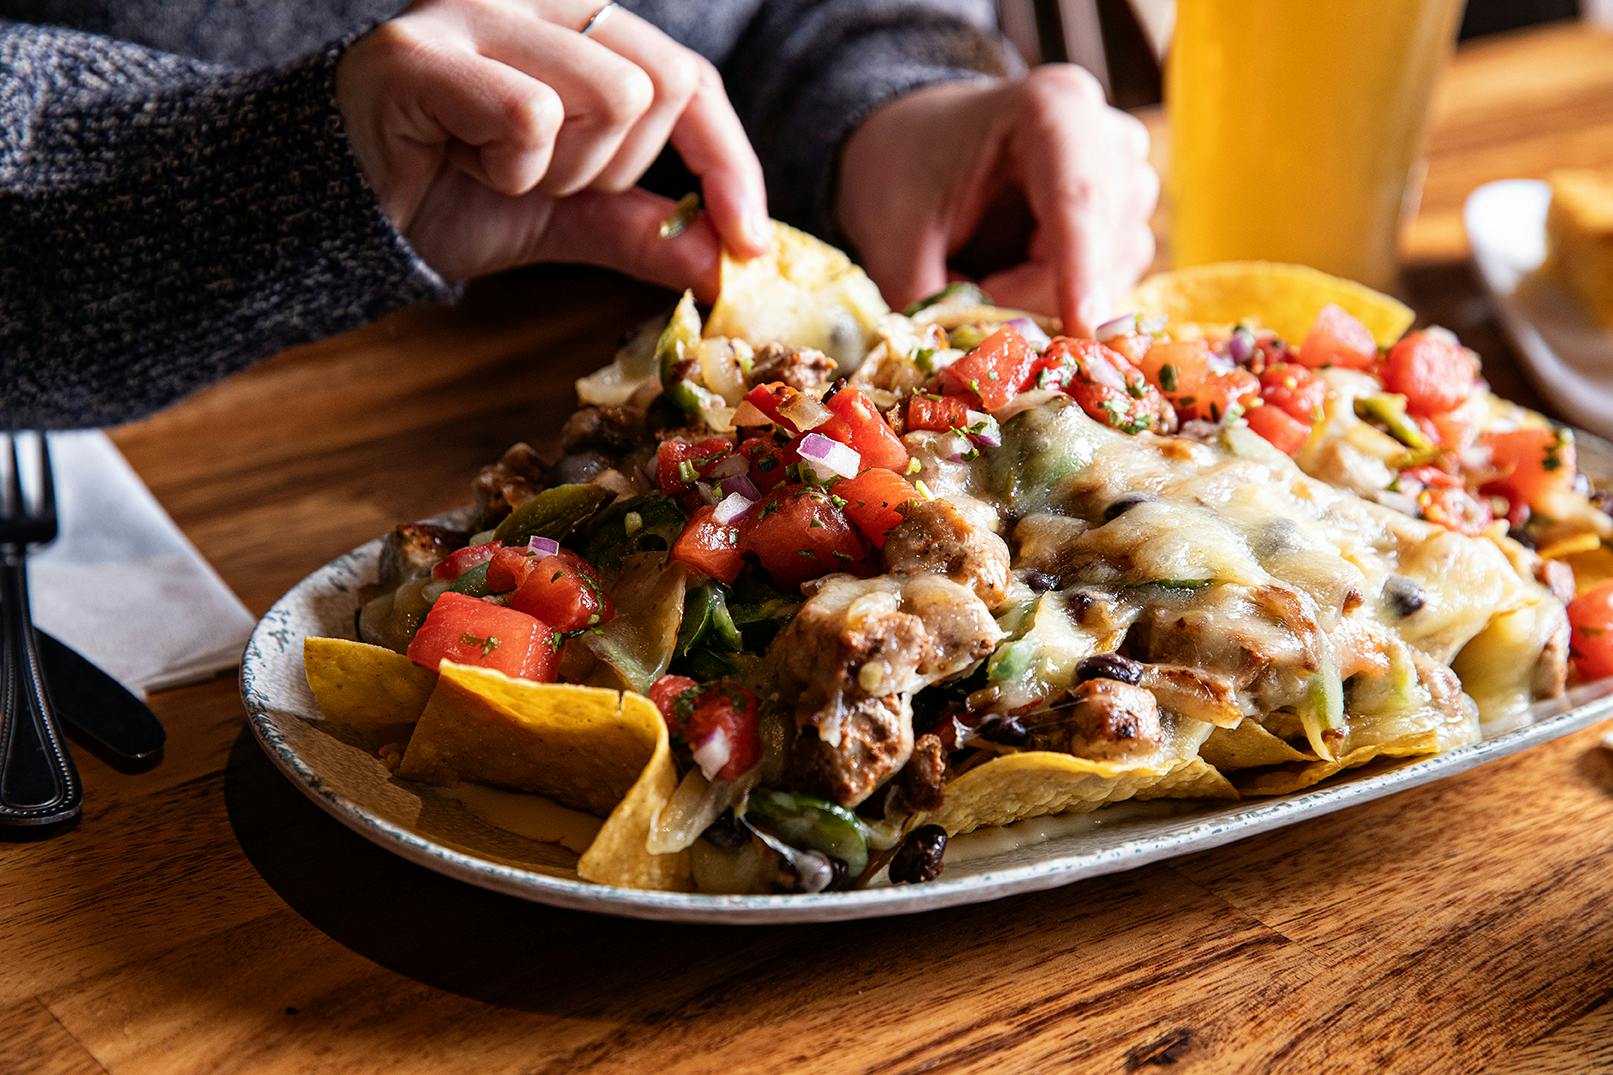 a plate of nachos